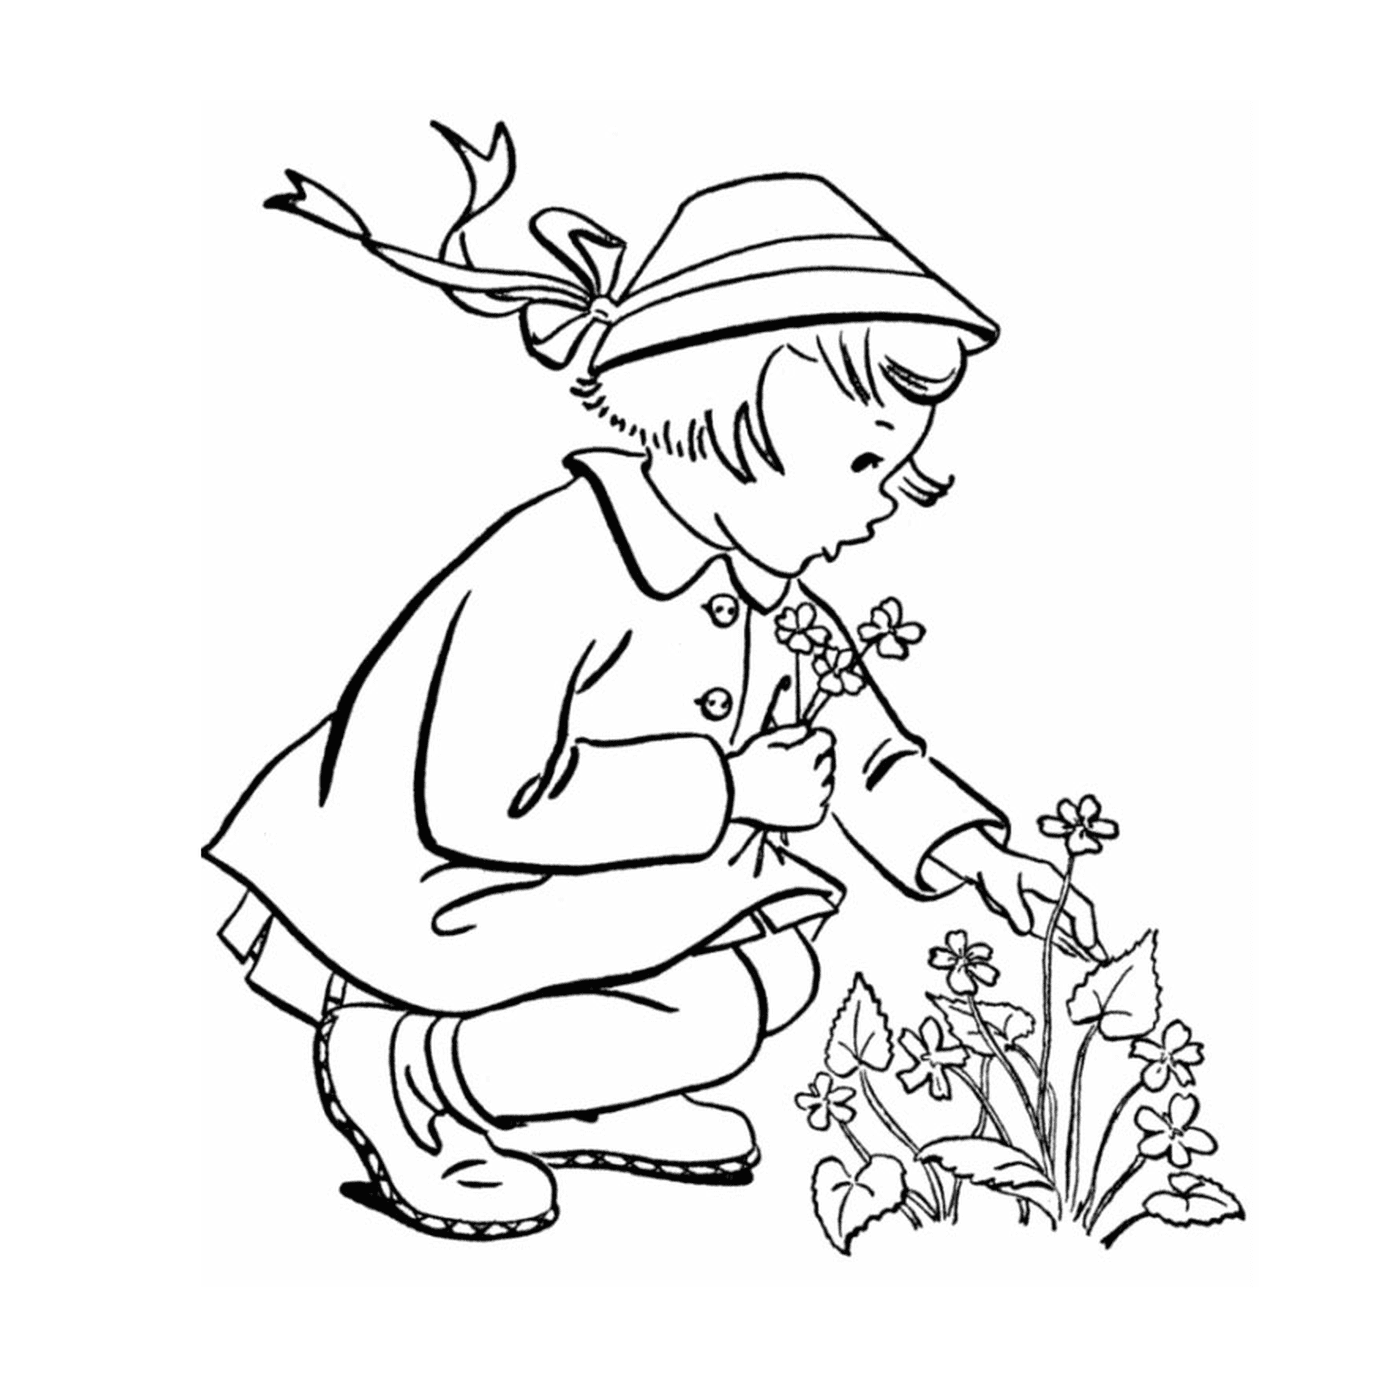  Una niña se arrodilla para plantar una flor 